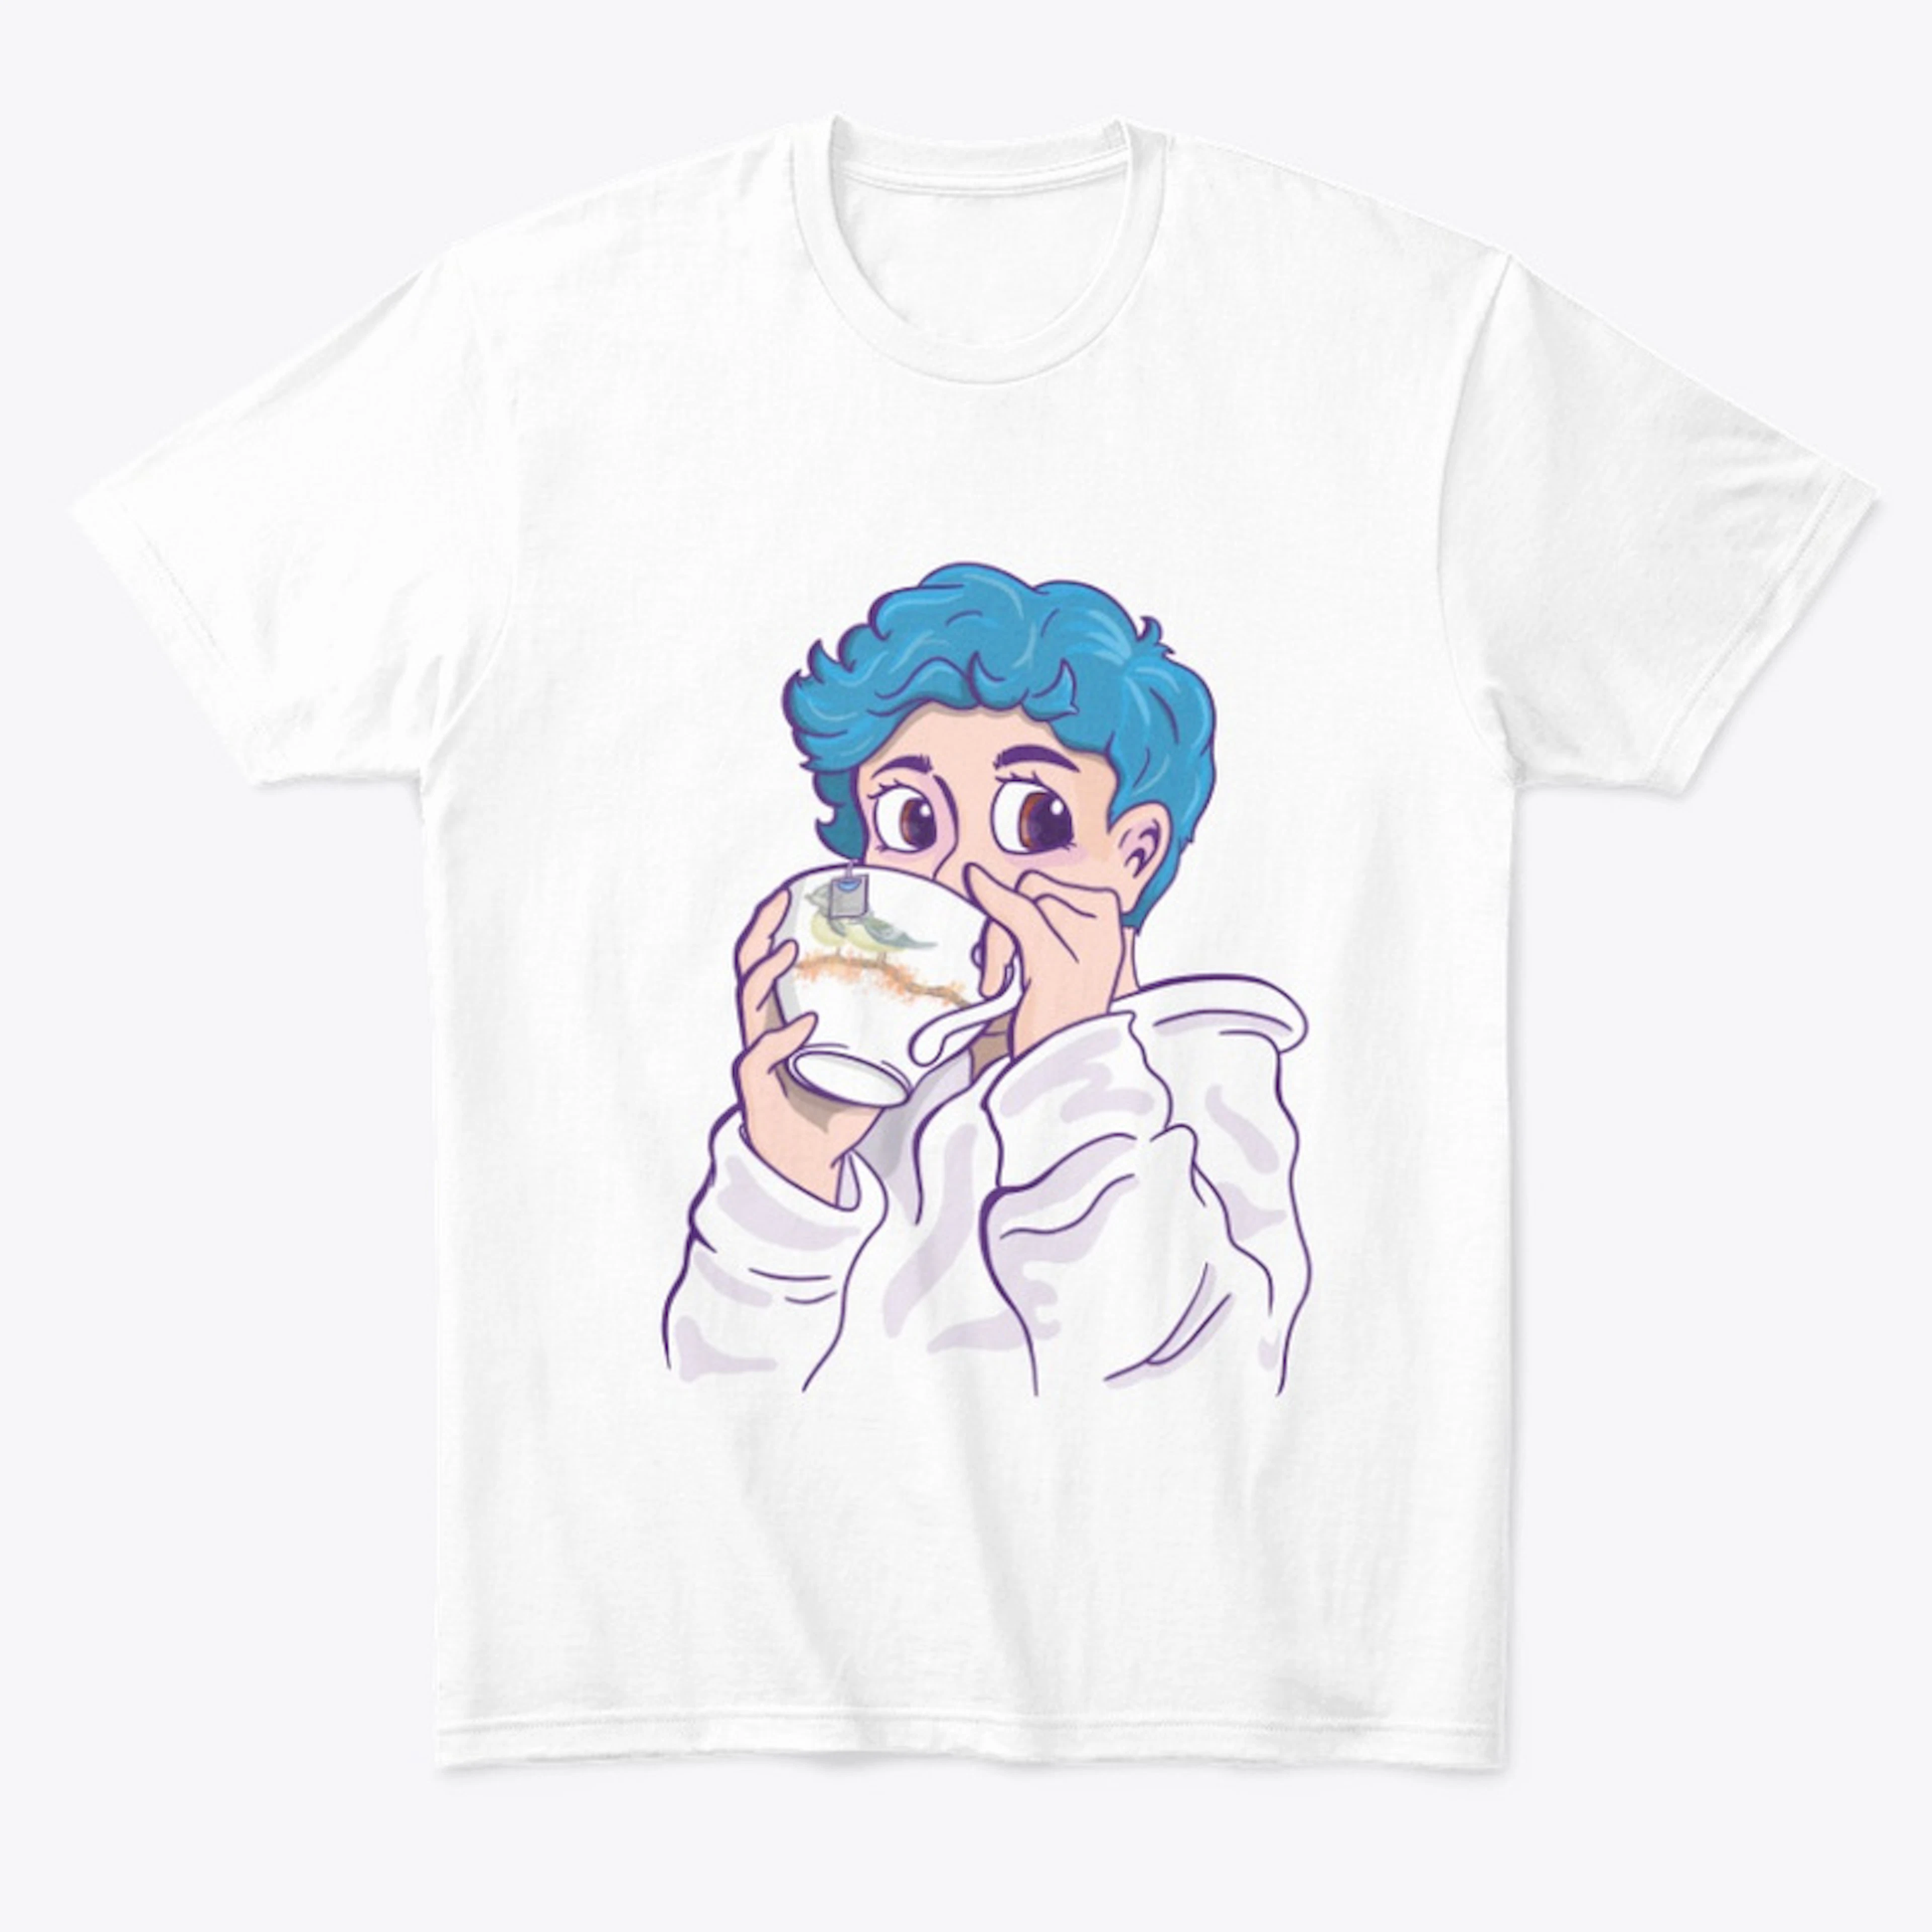 Tea Sip Shirt - Blue Hair